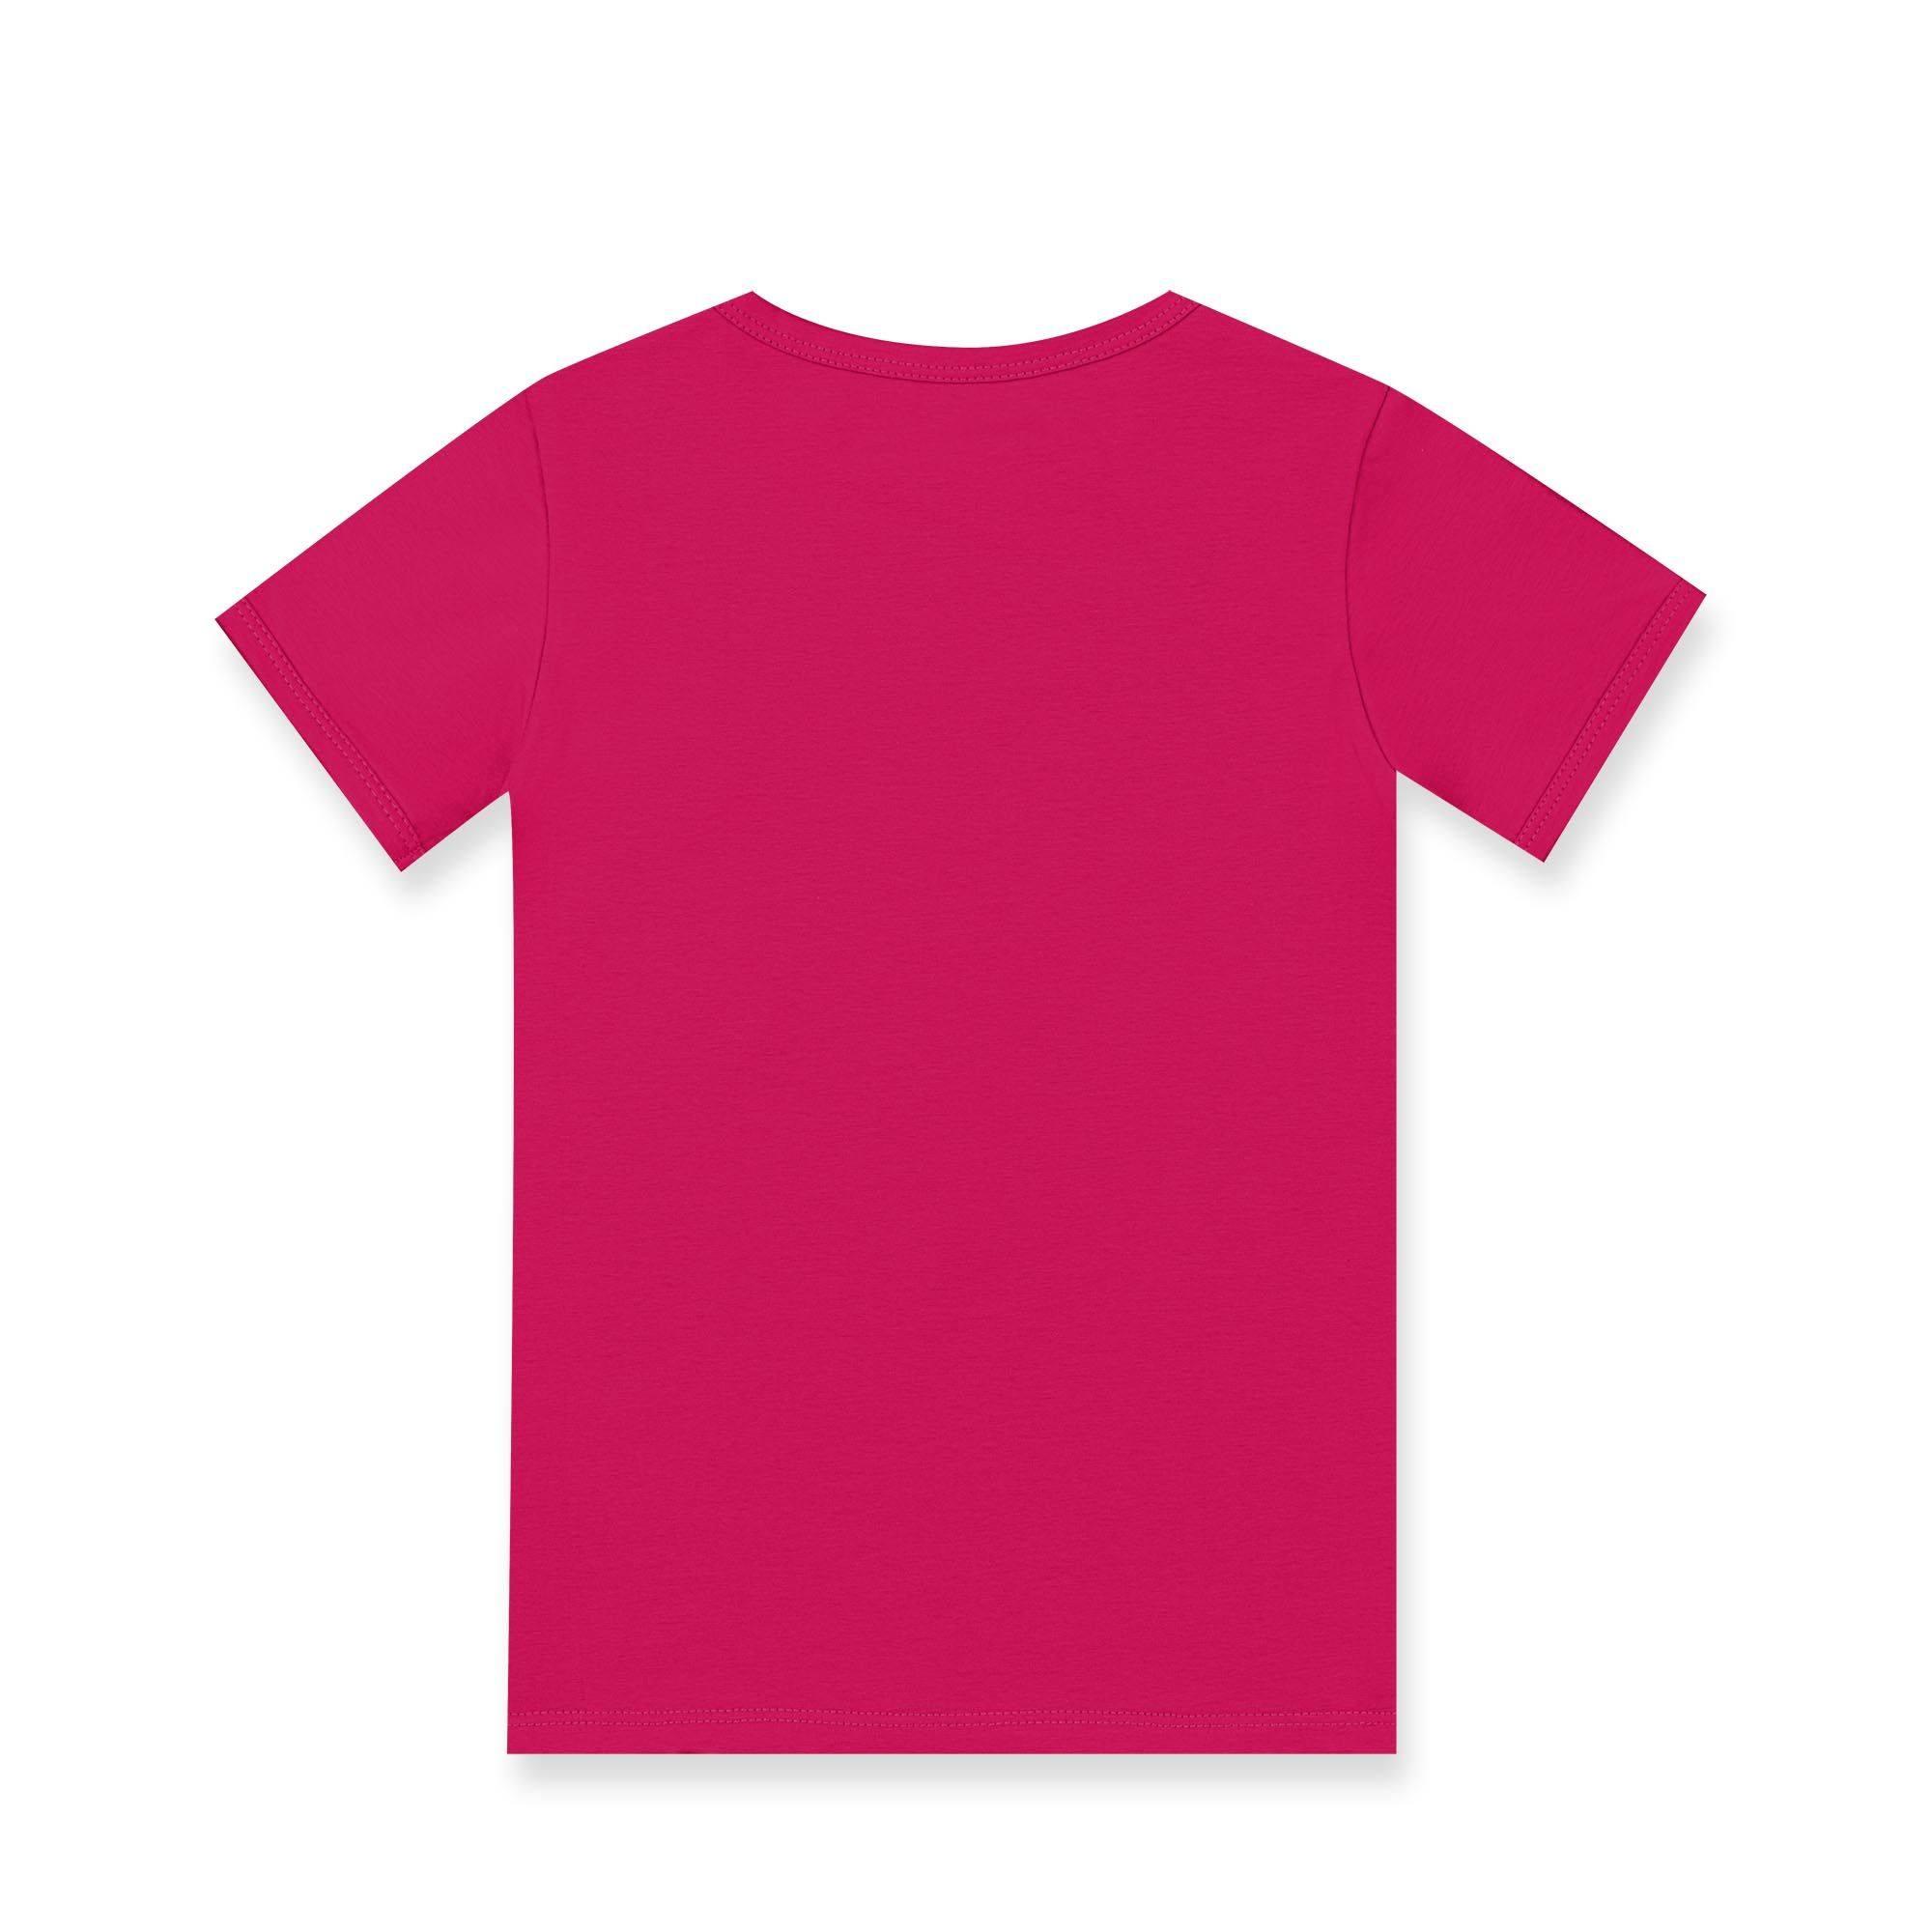 Pudroworóżowo-różowa koszulka dwukolorowa niemowlęca